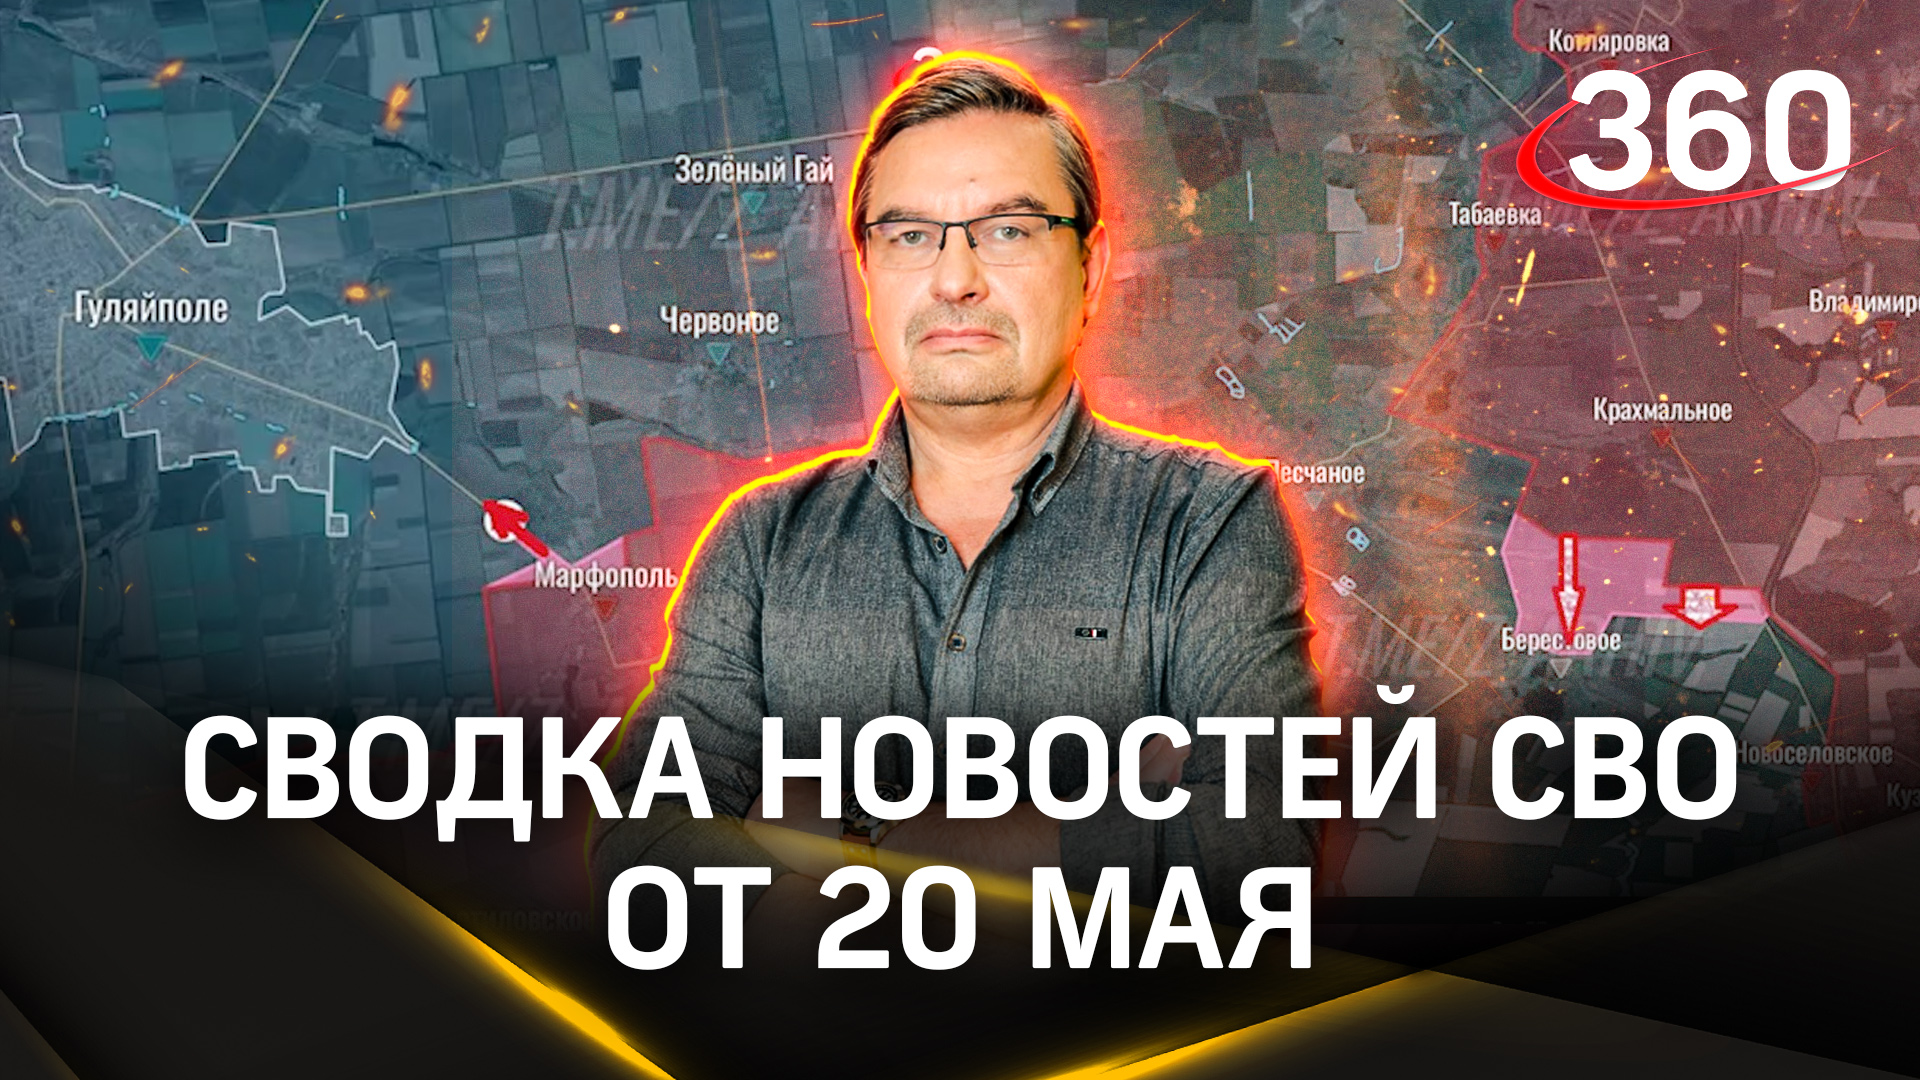 Михаил Онуфриенко: «Летнее контрнаступление на грабли». Последняя сводка новостей СВО от 20 мая